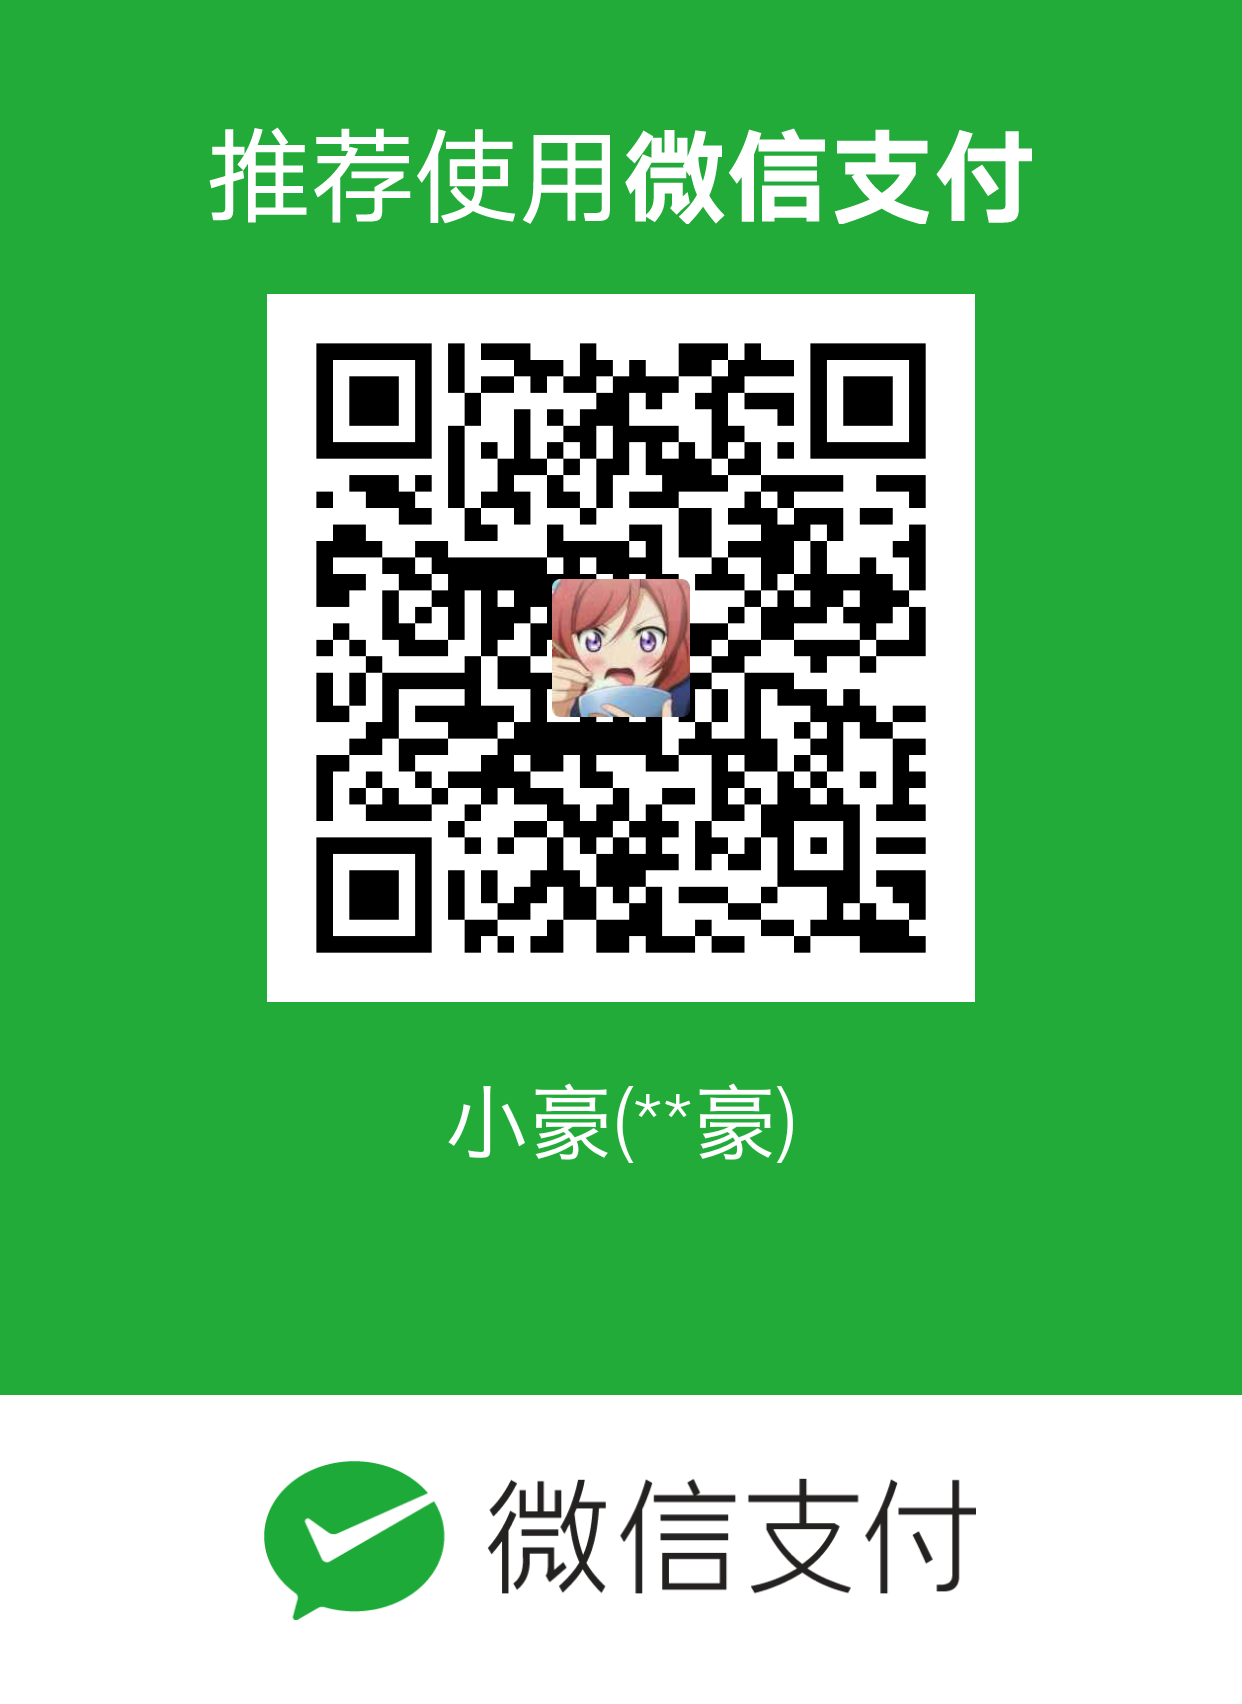 周子豪 WeChat Pay